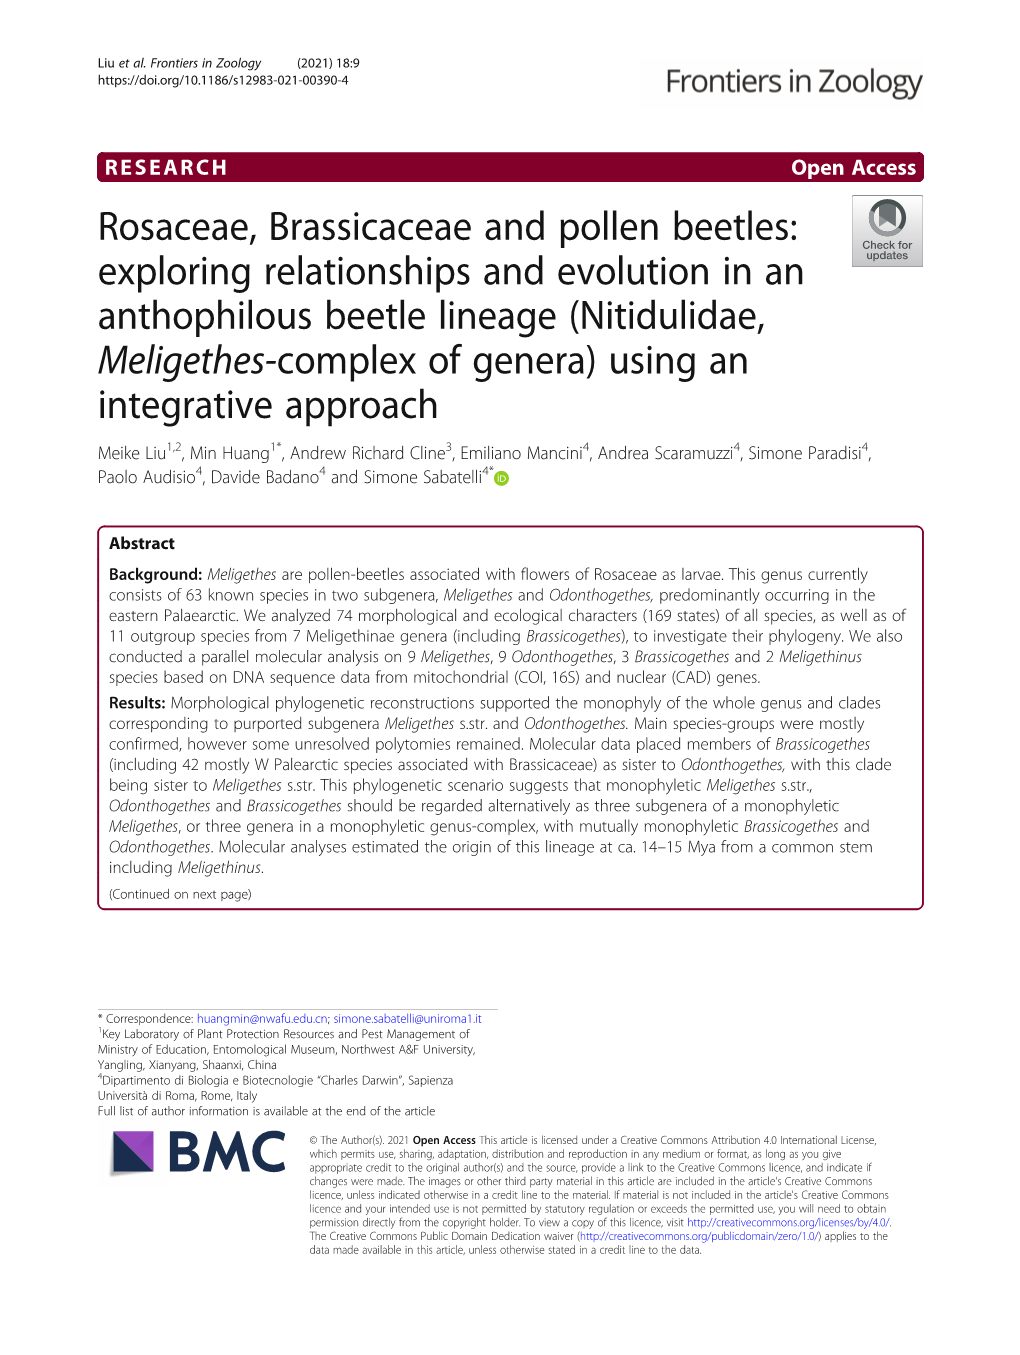 Rosaceae, Brassicaceae and Pollen Beetles